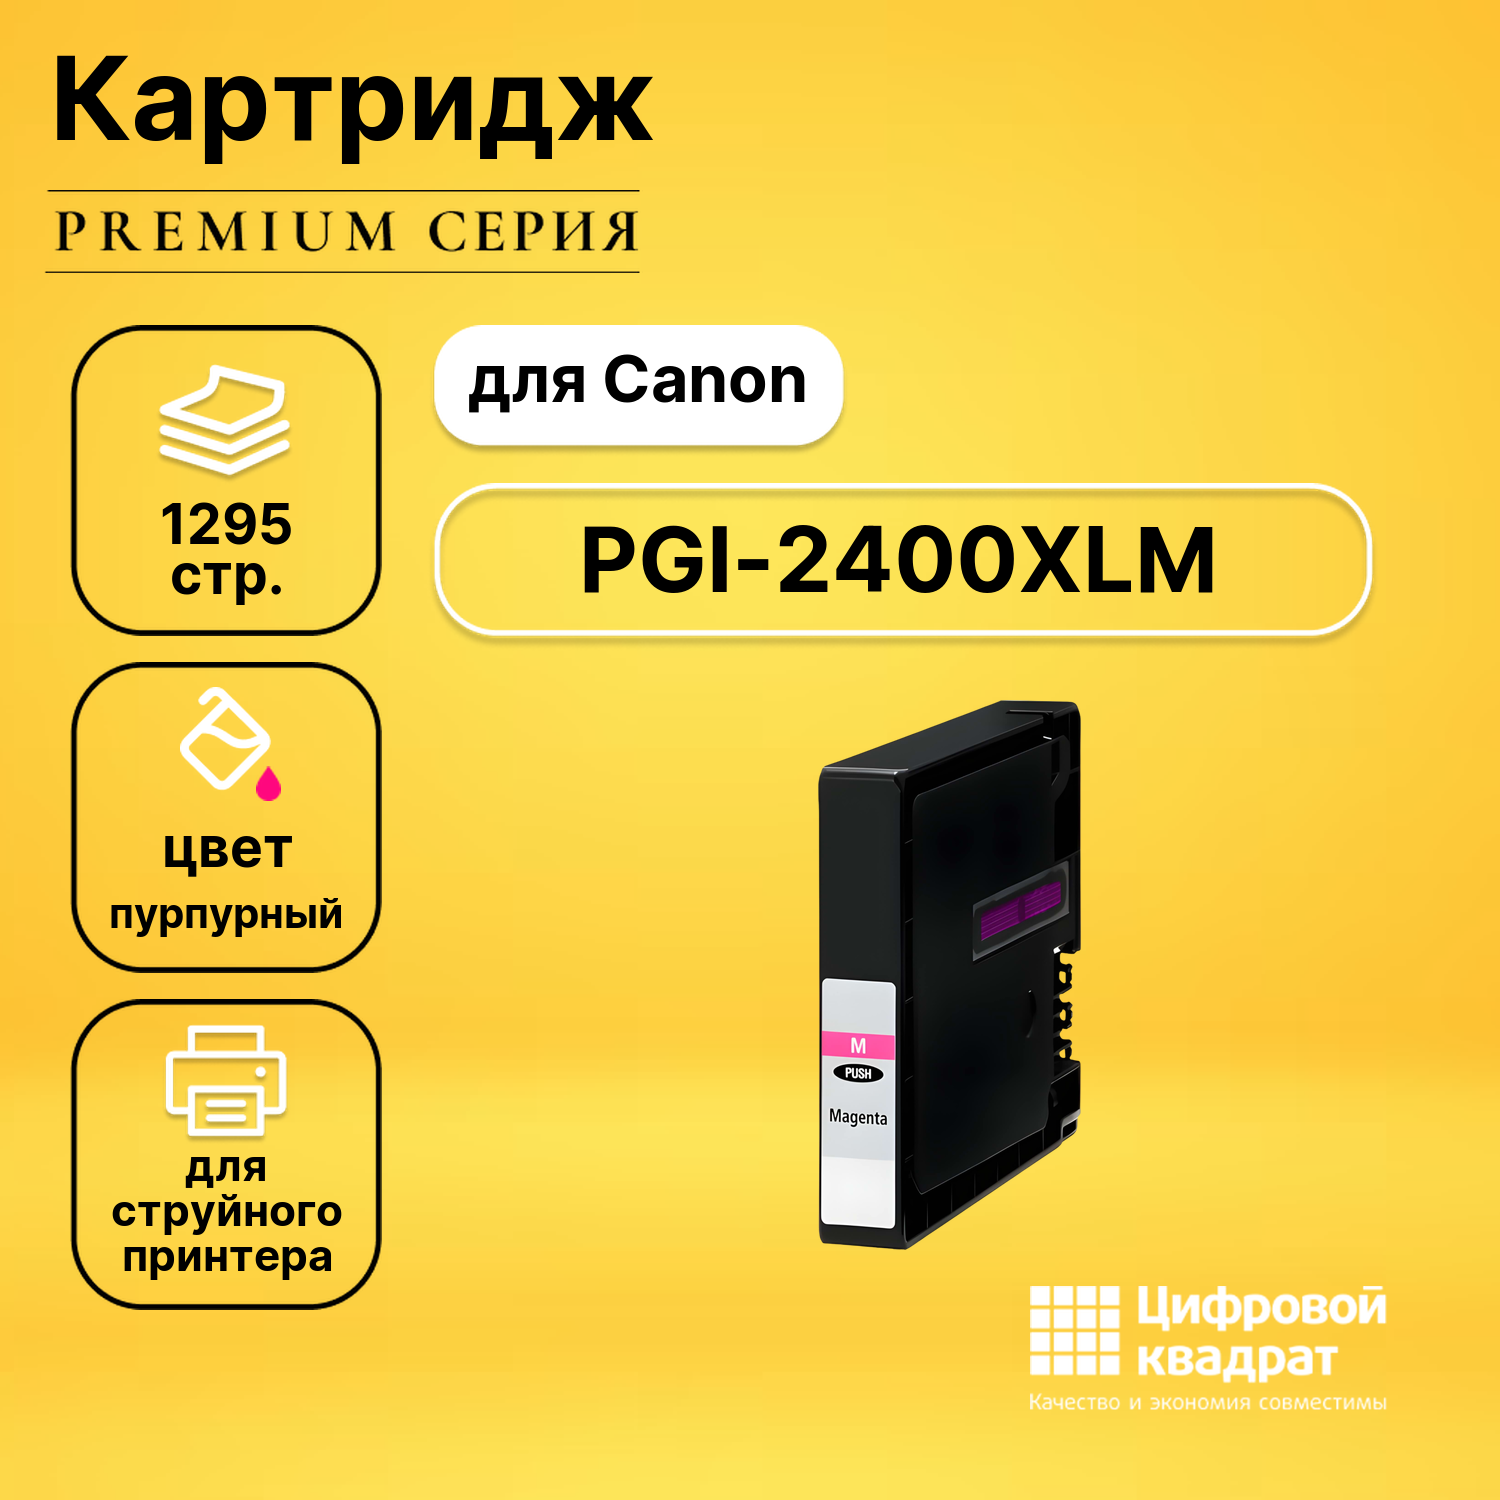 Картридж DS PGI-2400XLM (9275B001) пурпурный